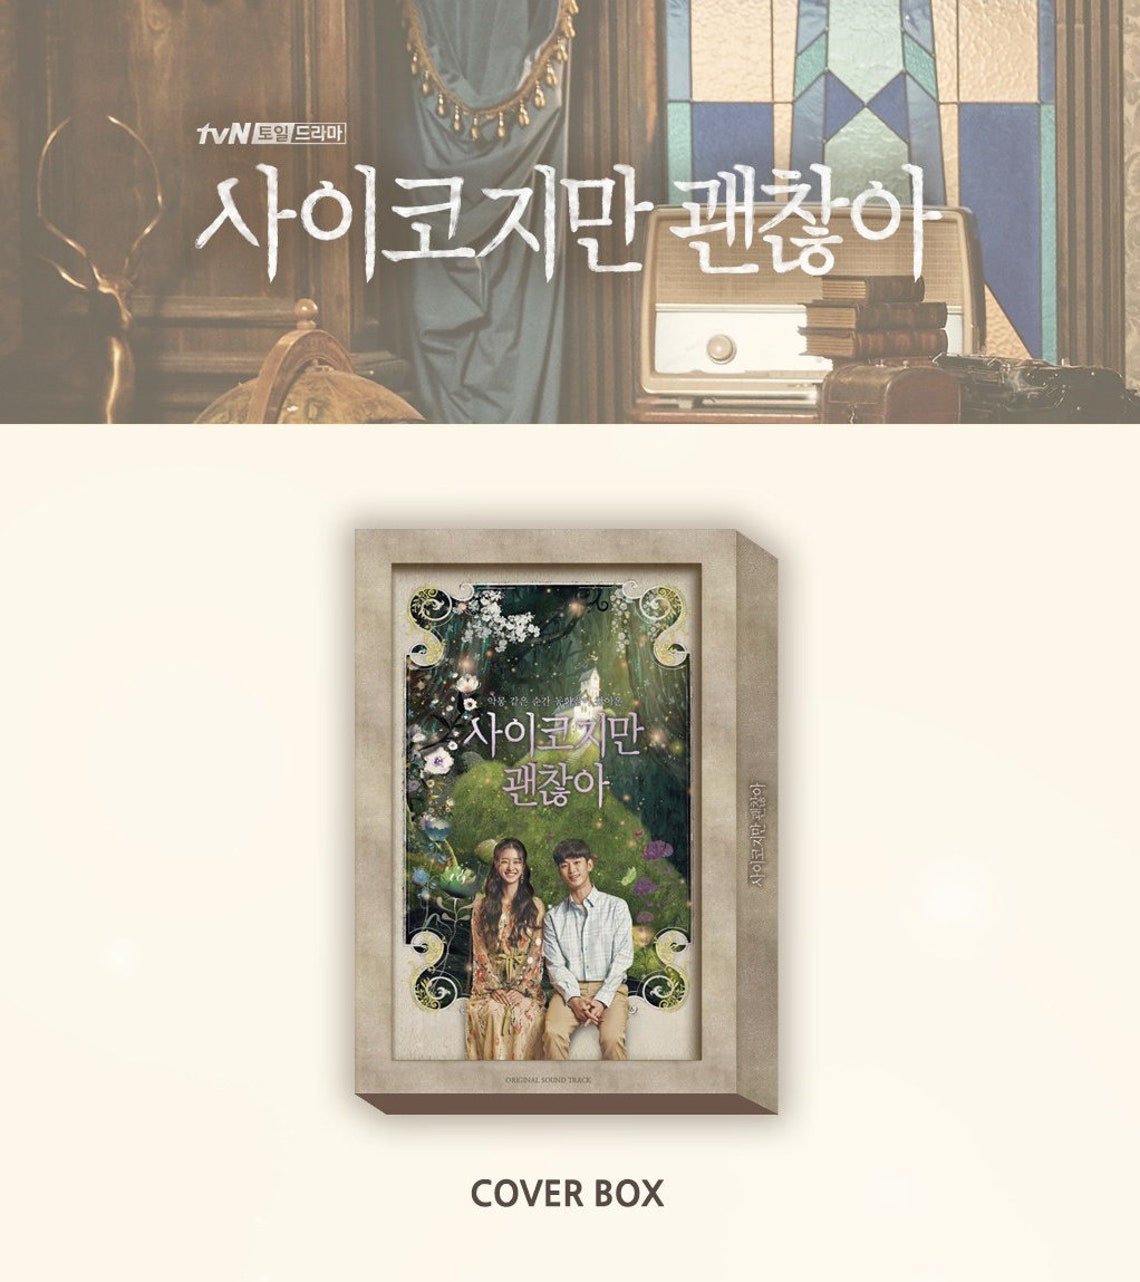 It's Ok to Not Be Ok KDrama (tvN Drama) OST Album